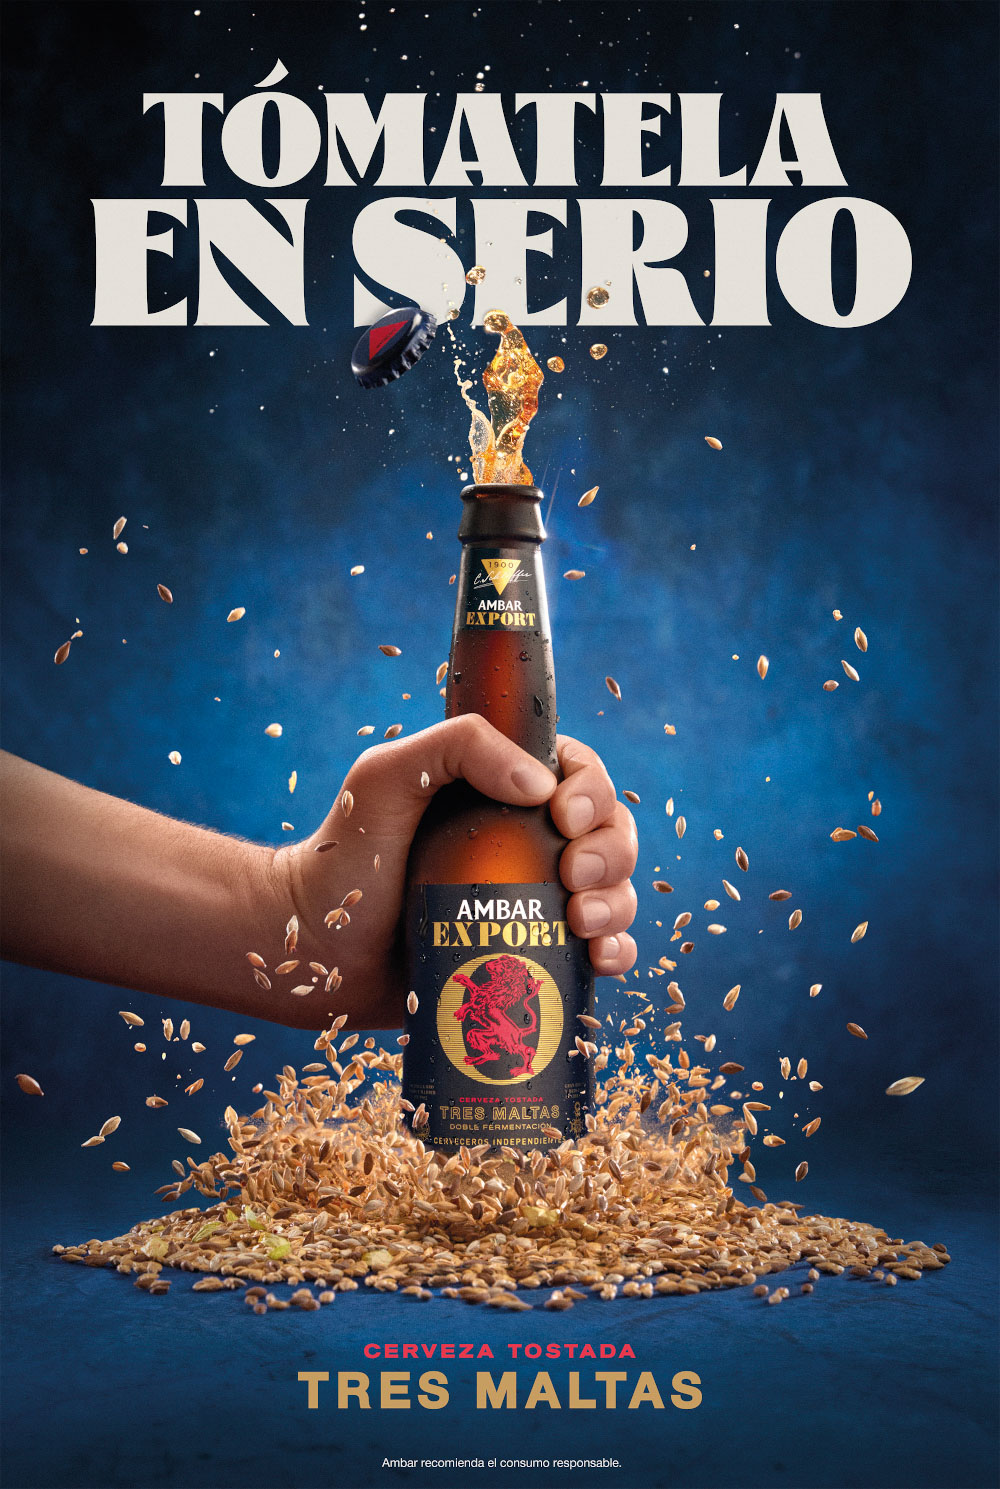 Campaña publicitaria realizada por la fotógrafa Tessa Dóniga junto a Enri Mür Studio y Pingüino & Torreblanca para las cervezas Ambar.